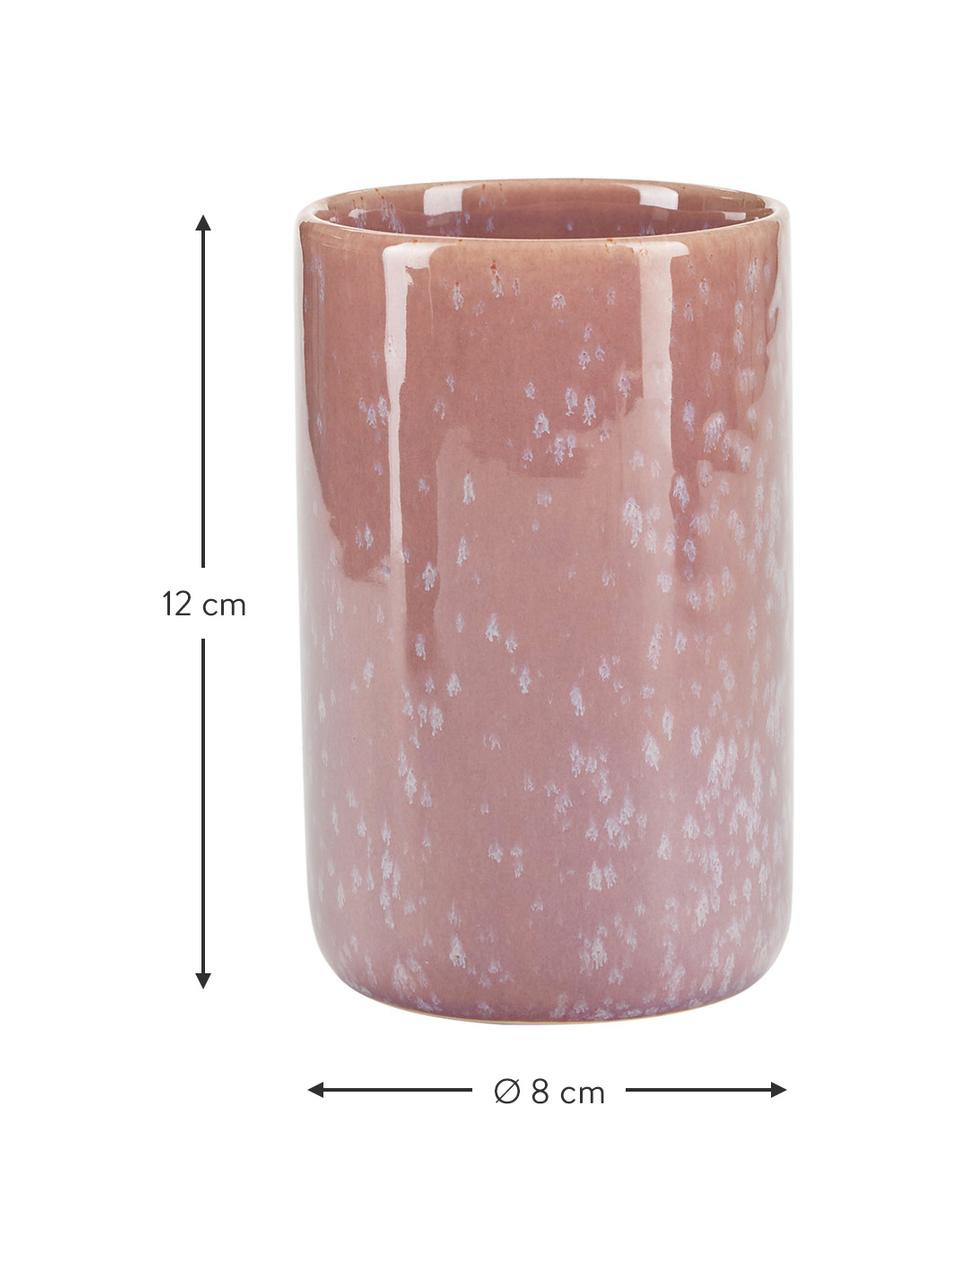 Keramický pohár na zubné kefky Mineral, Keramika, Ľaliová, bledoružová, Ø 8 x V 12 cm